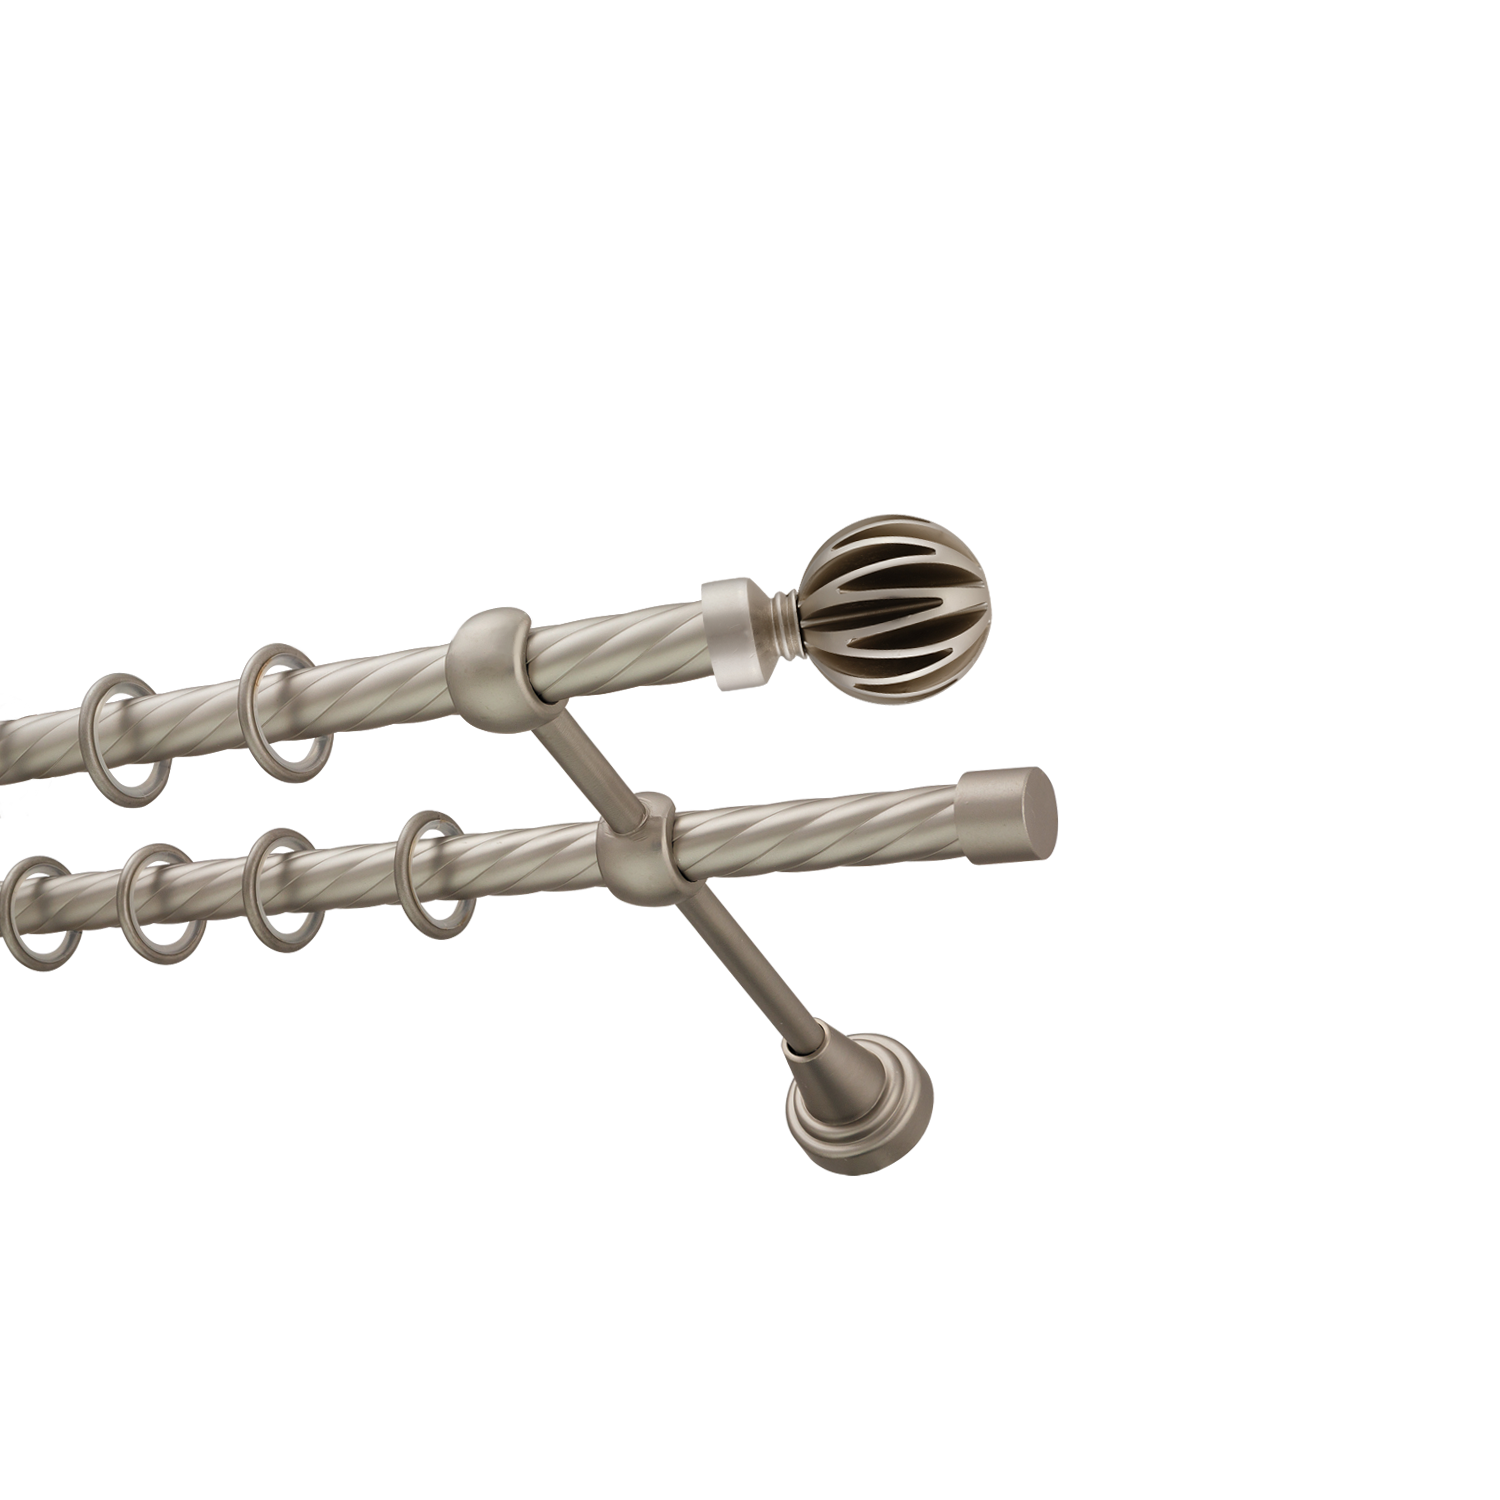 Металлический карниз для штор Шафран, двухрядный 16/16 мм, сталь, витая штанга, длина 300 см